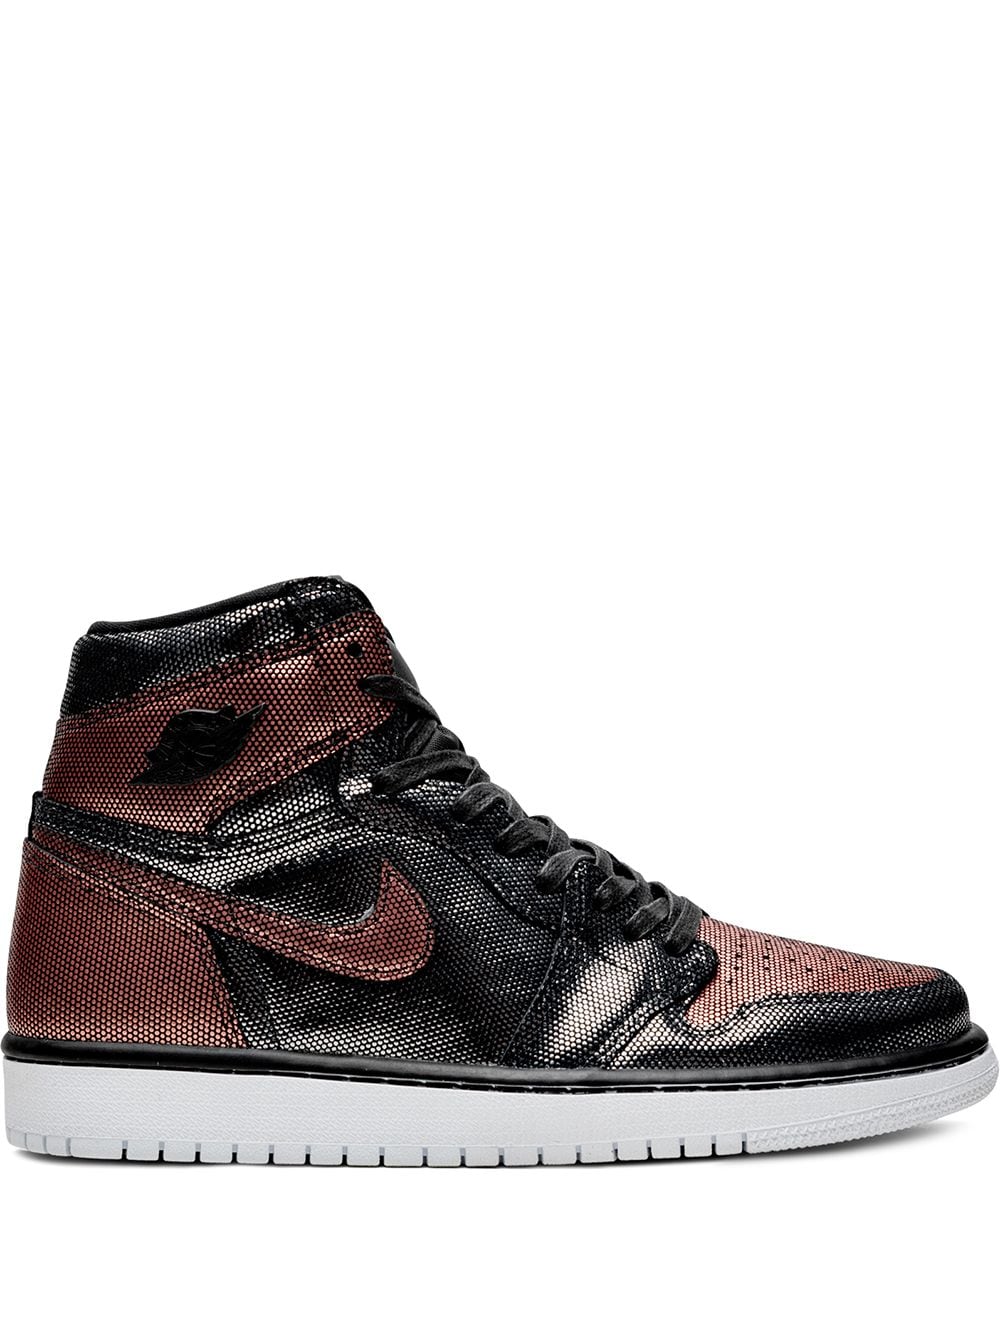 Jordan Air Jordan 1 Hi OG "Fearless" sneakers - Black